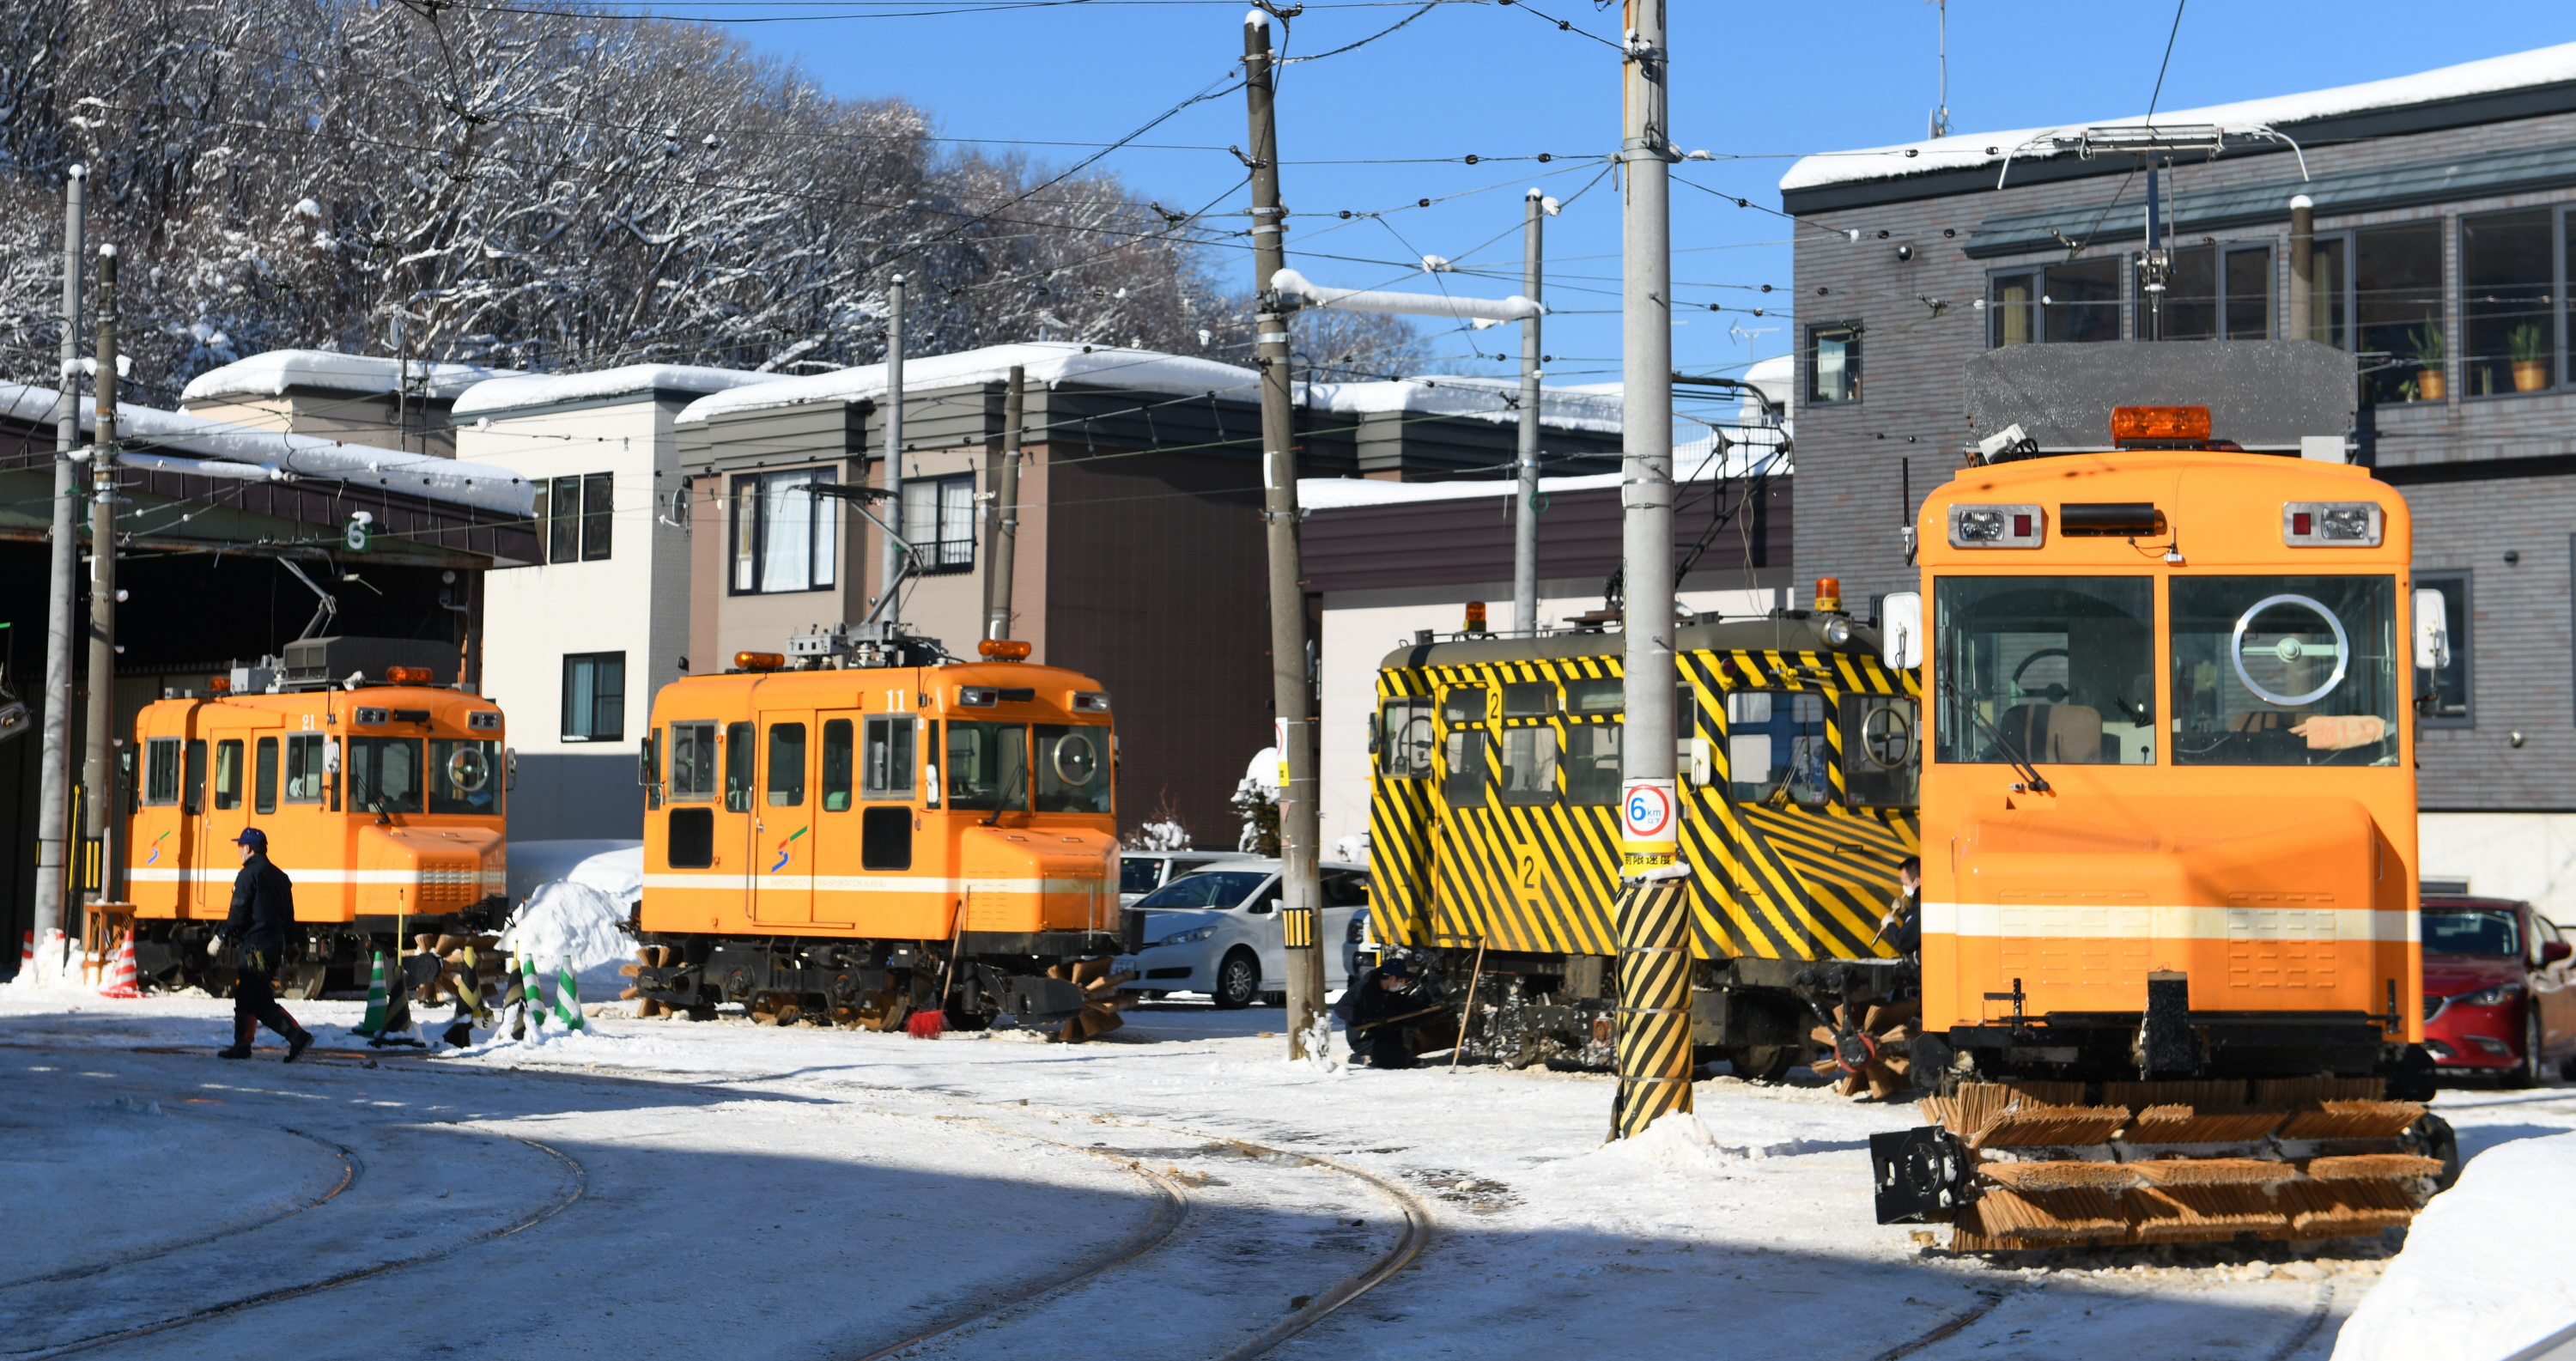 街行く路面電車 雪国支えるササラ電車 札幌市電 1 2ページ 産経ニュース